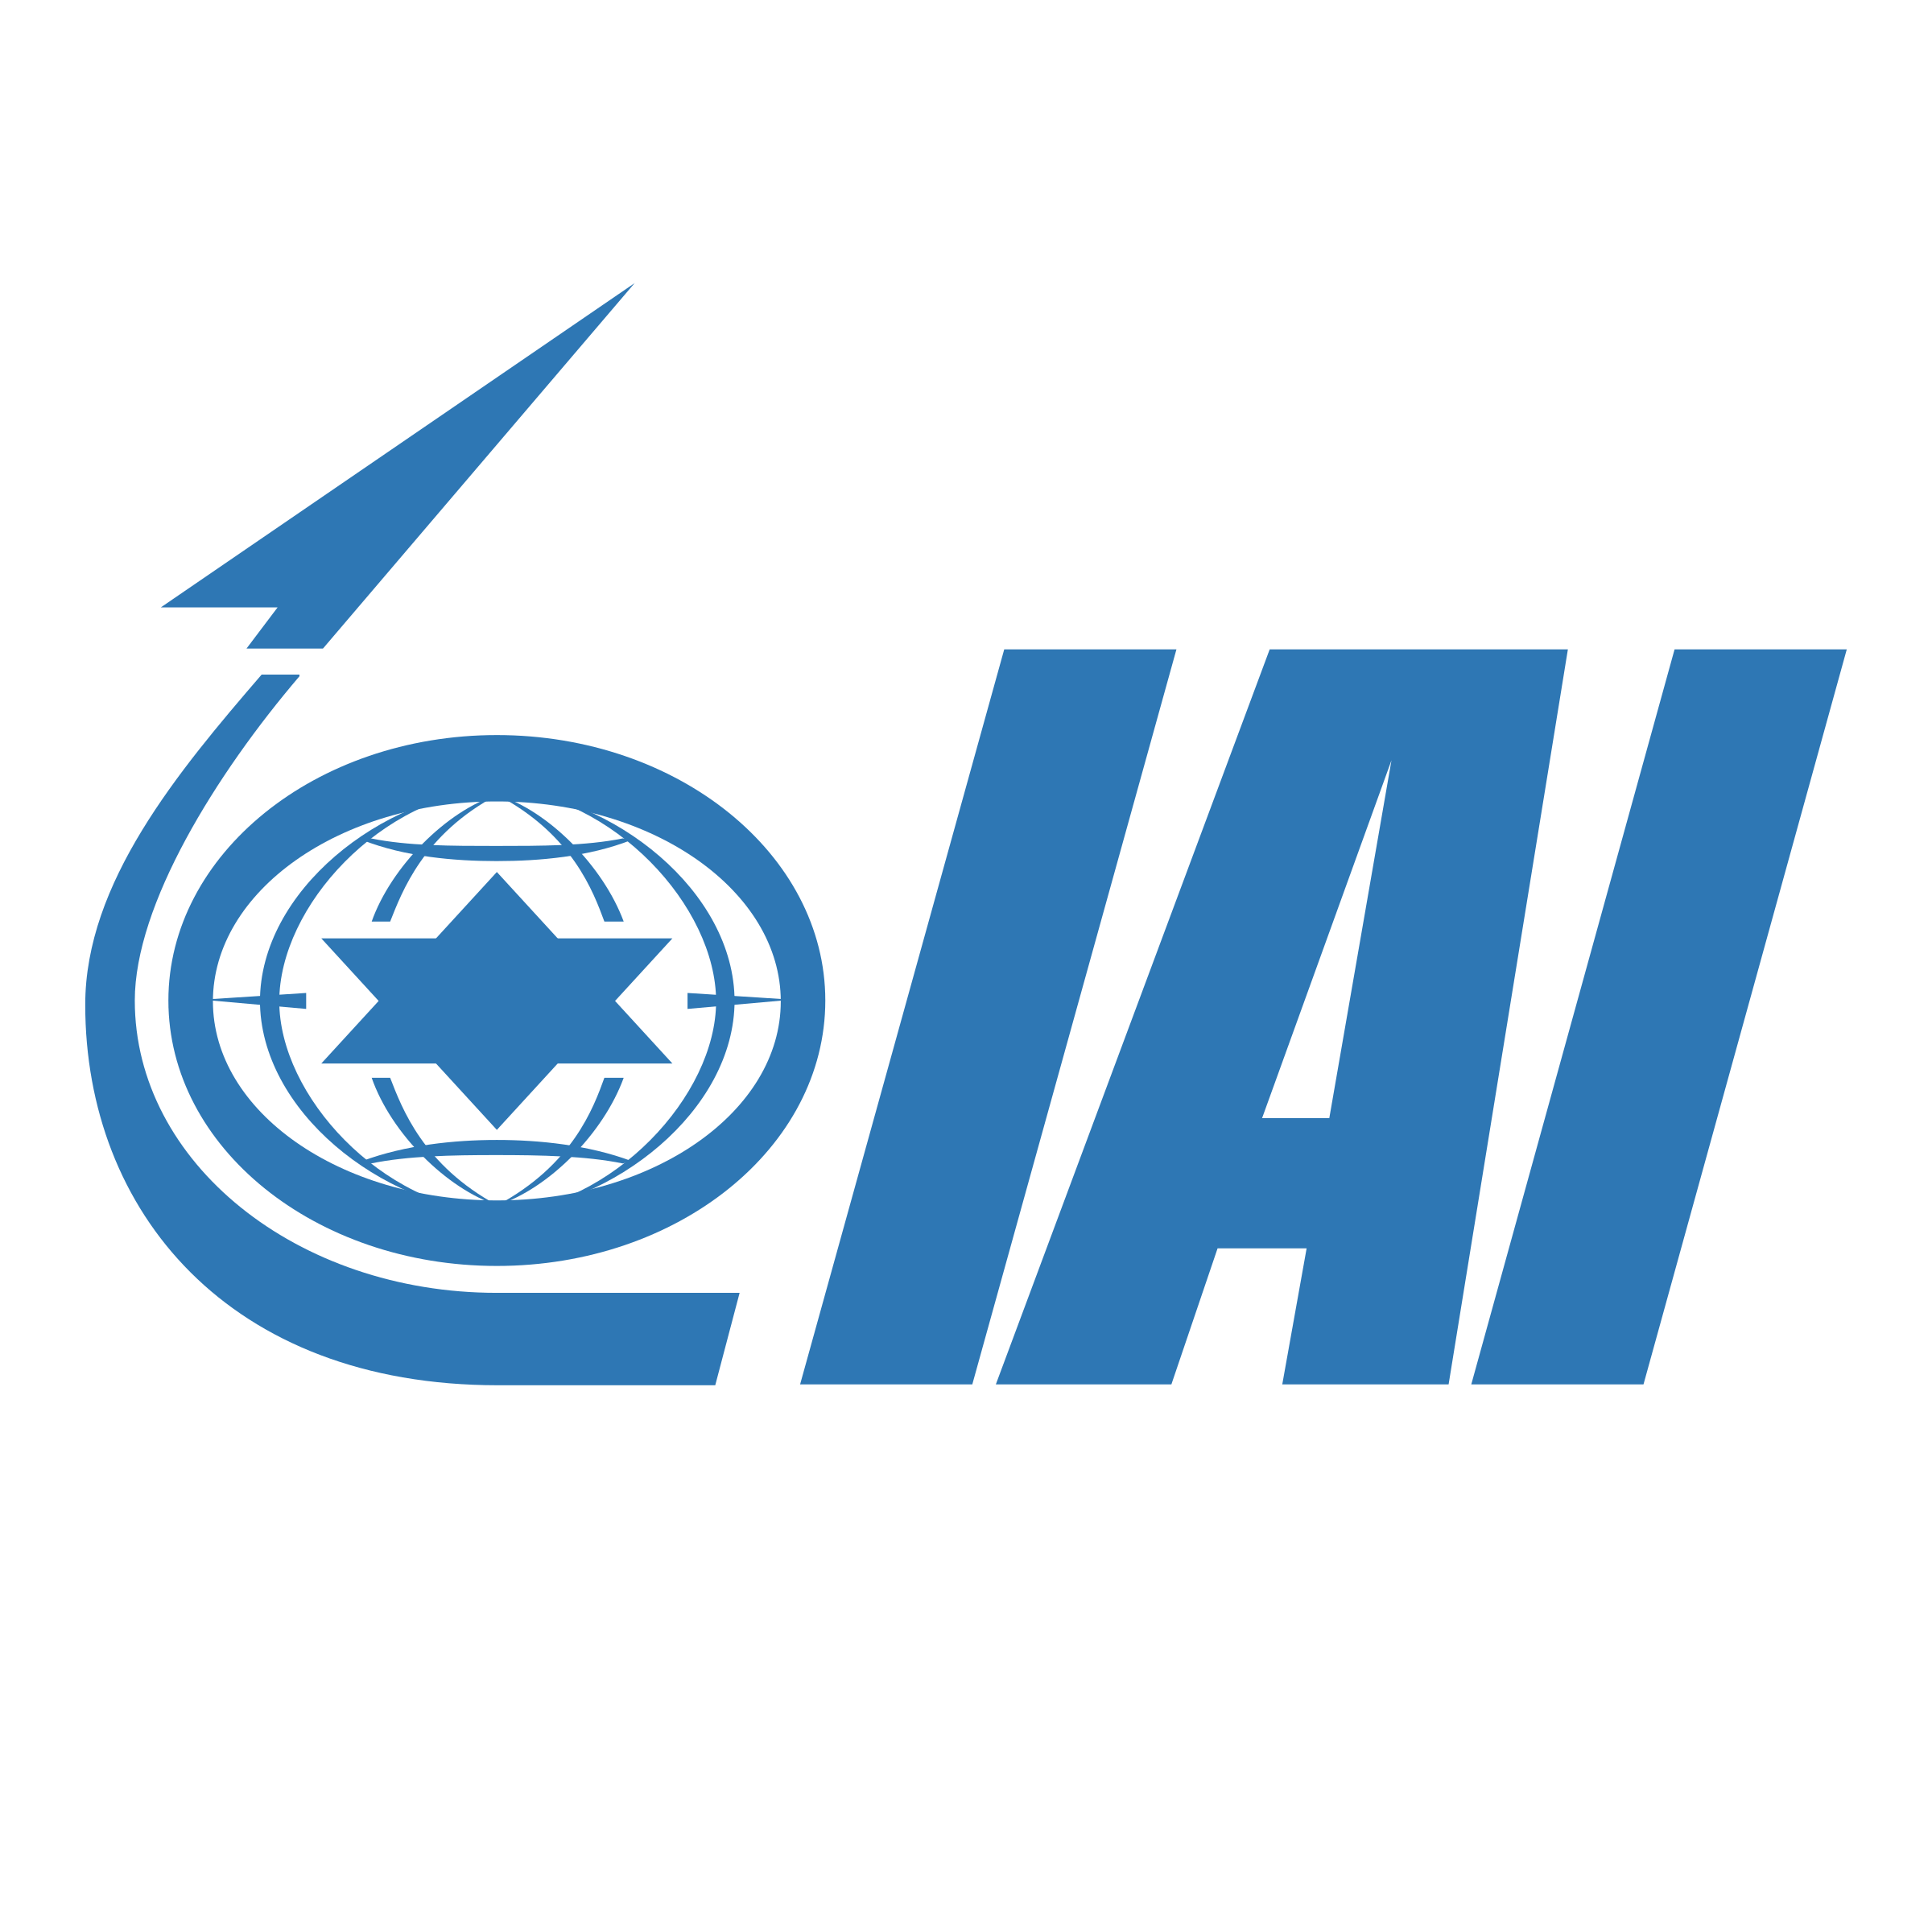 IAI Logo - IAI Logo PNG Transparent & SVG Vector